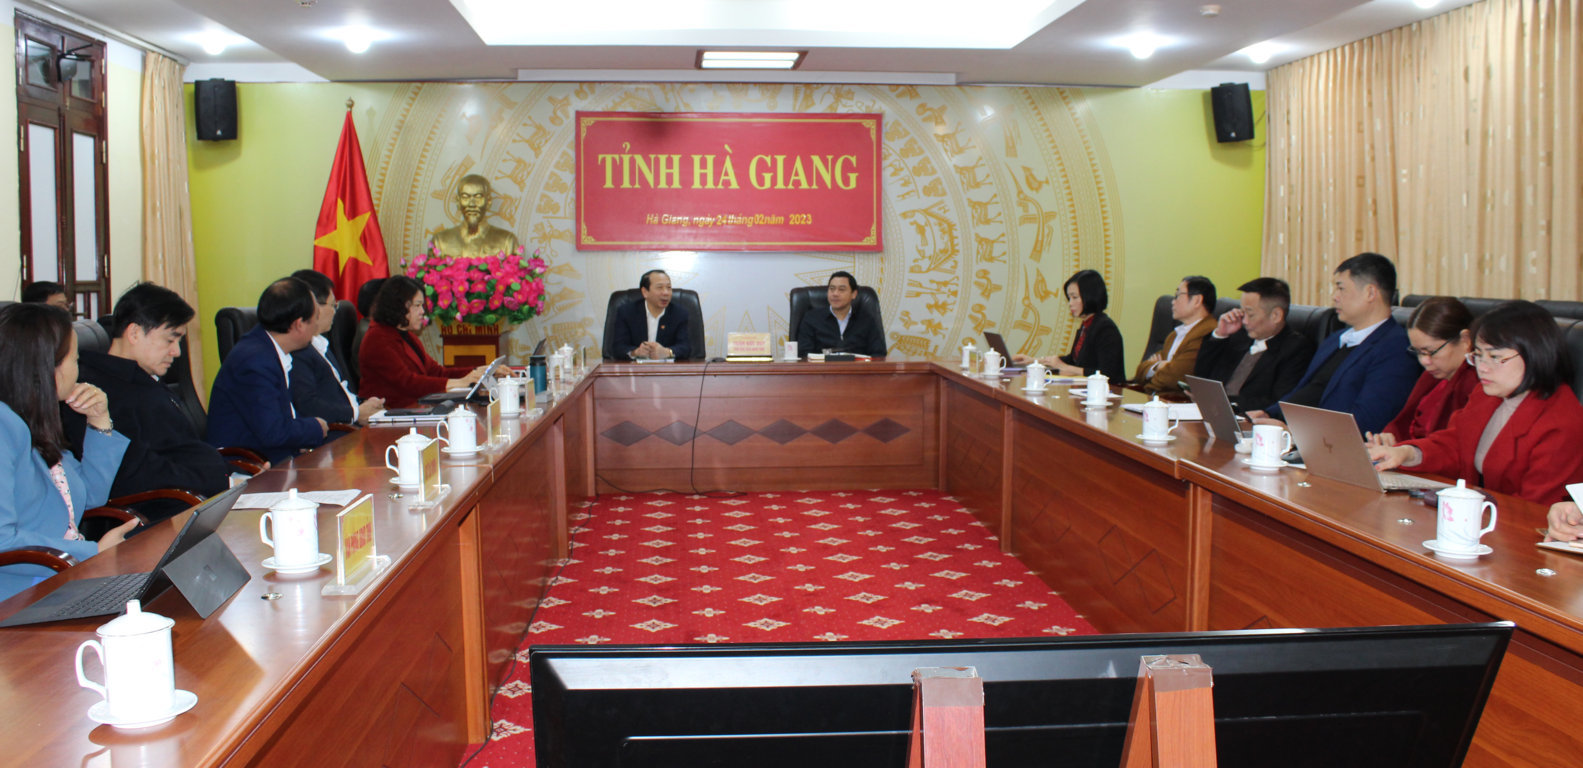 Đồng chí Trần Đức Quý- Phó Chủ tịch UBND tỉnh chủ trì điểm cầu Hà Giang